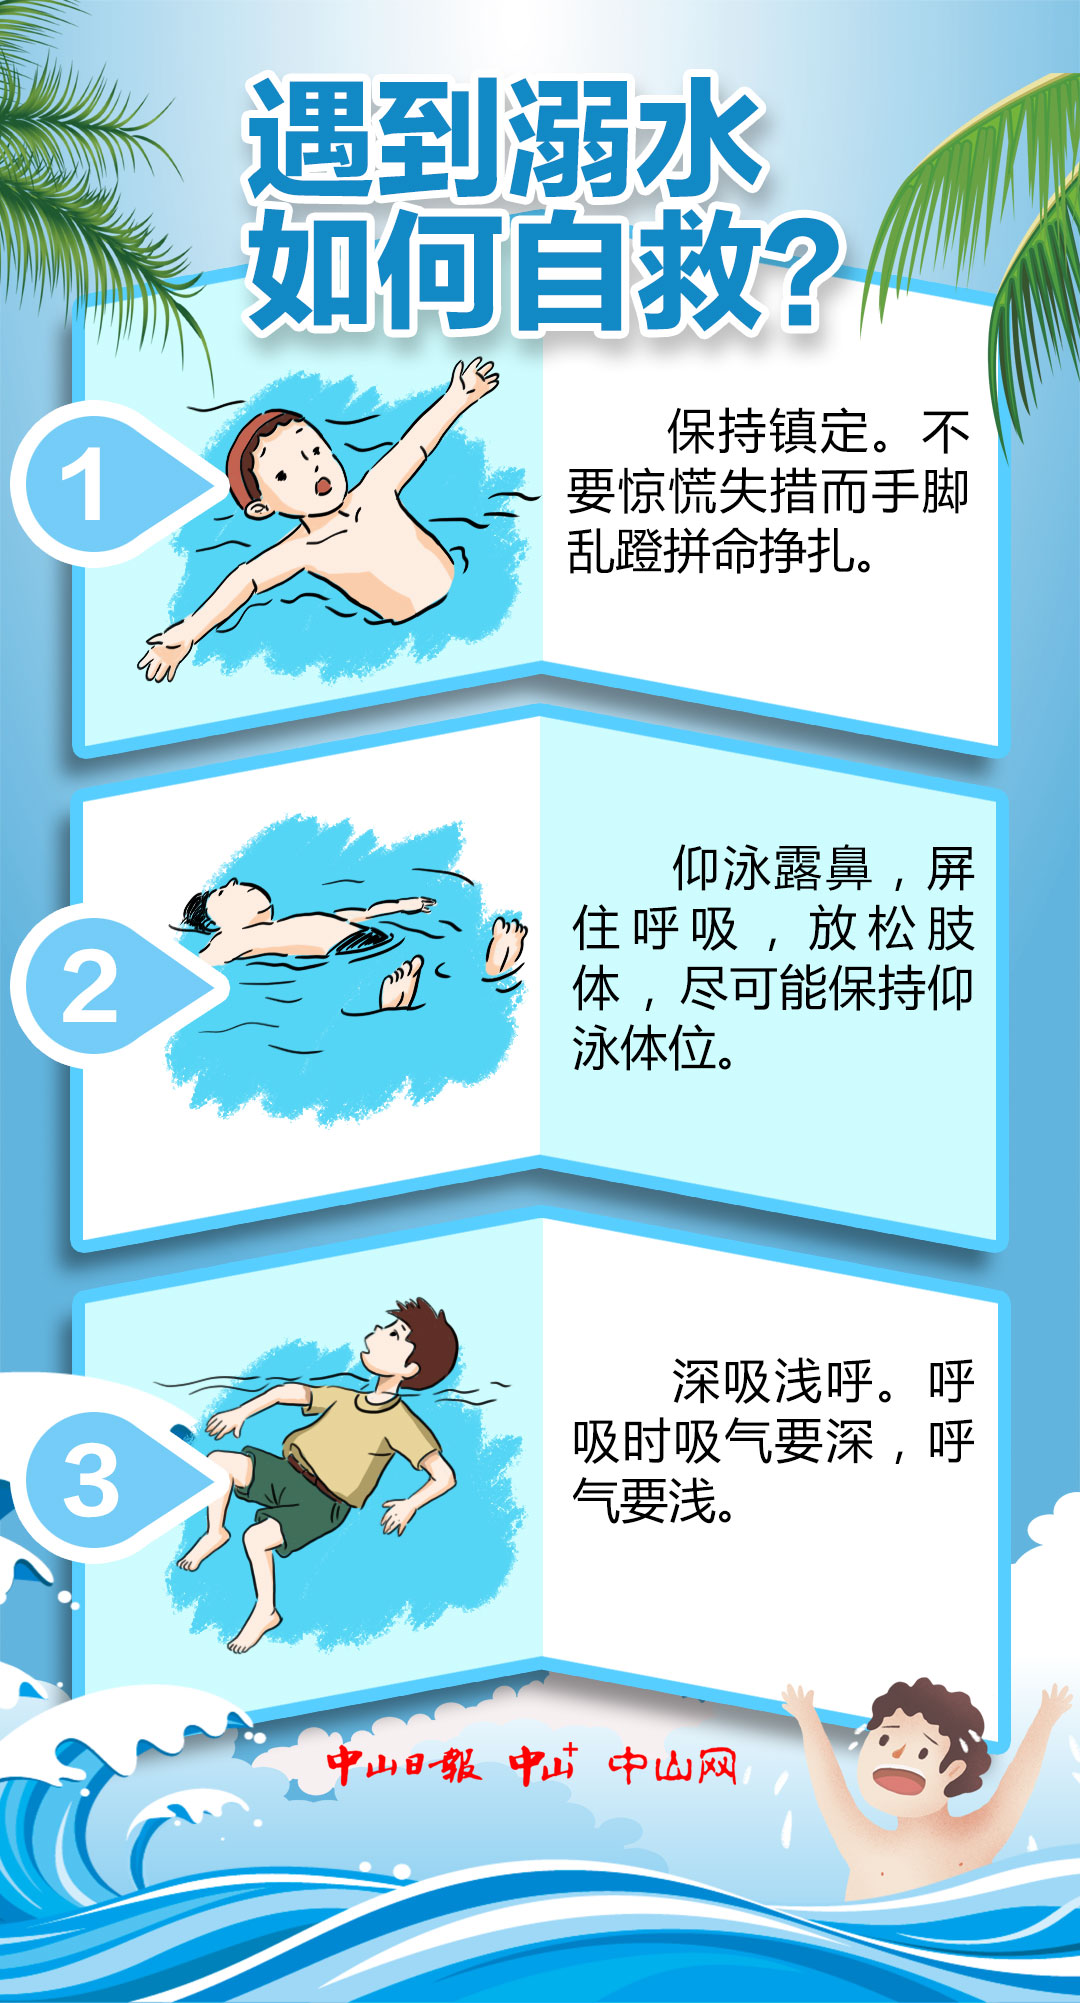 防溺水自救方法基本图片